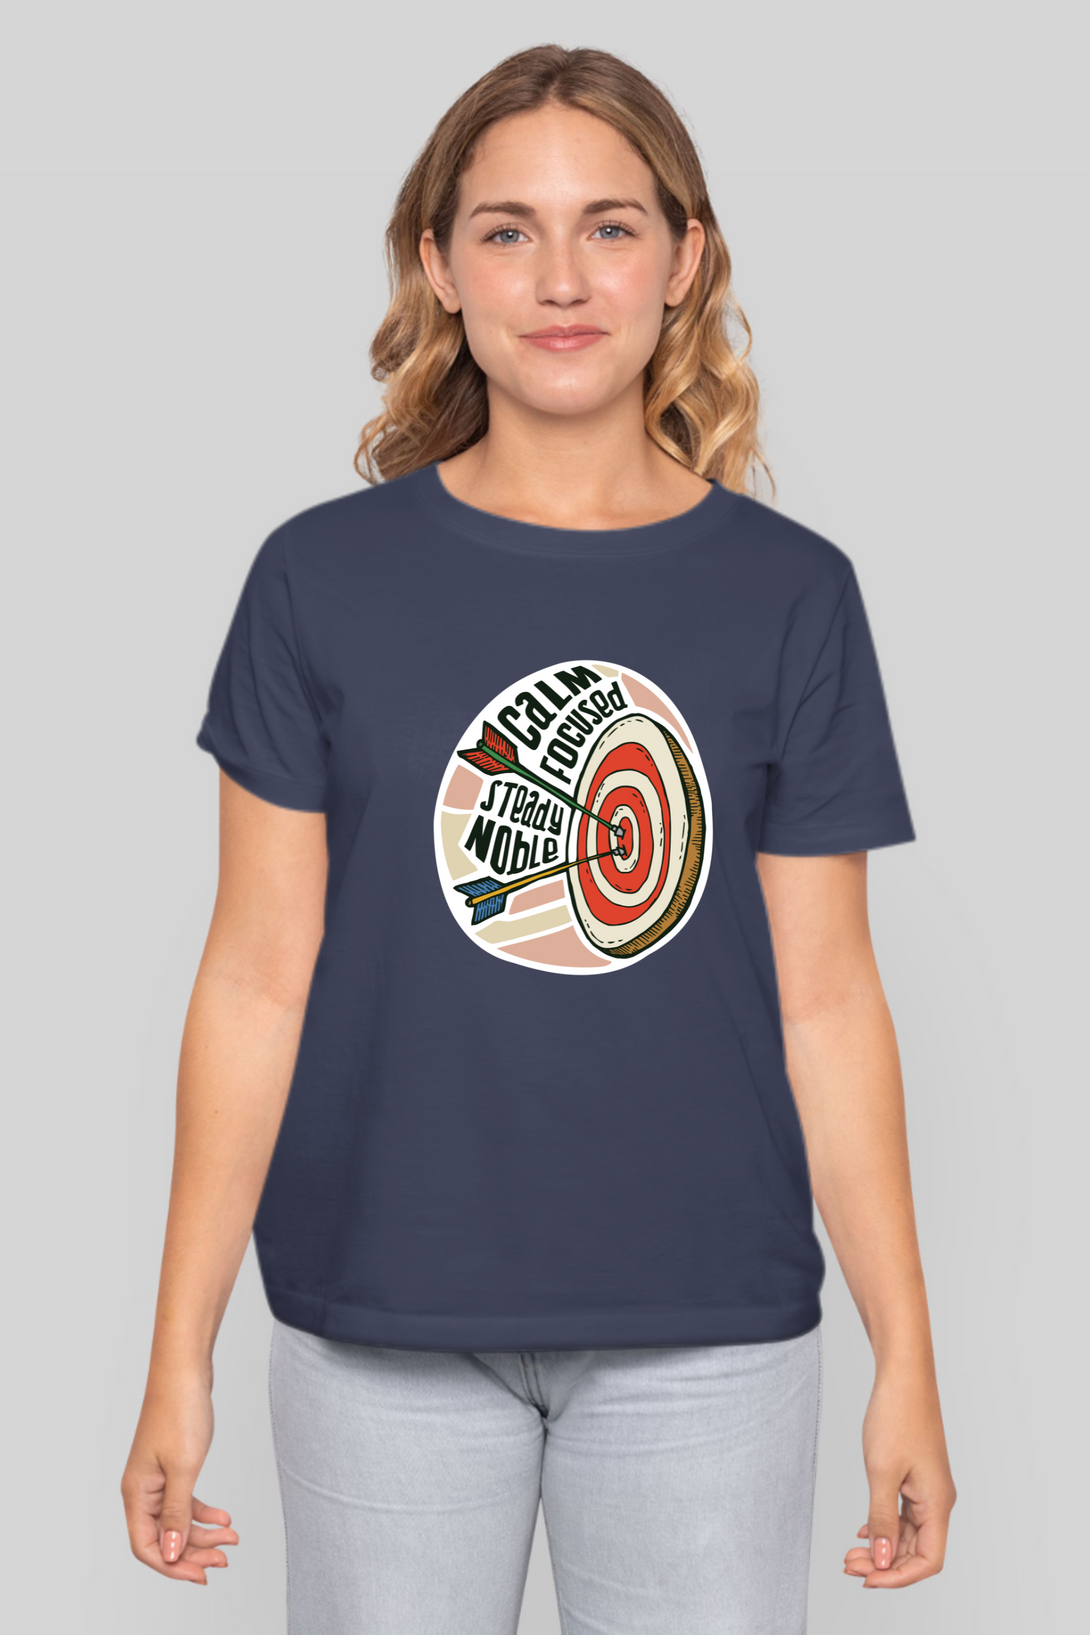 Bullseye Printed T-Shirt For Women - WowWaves - 13